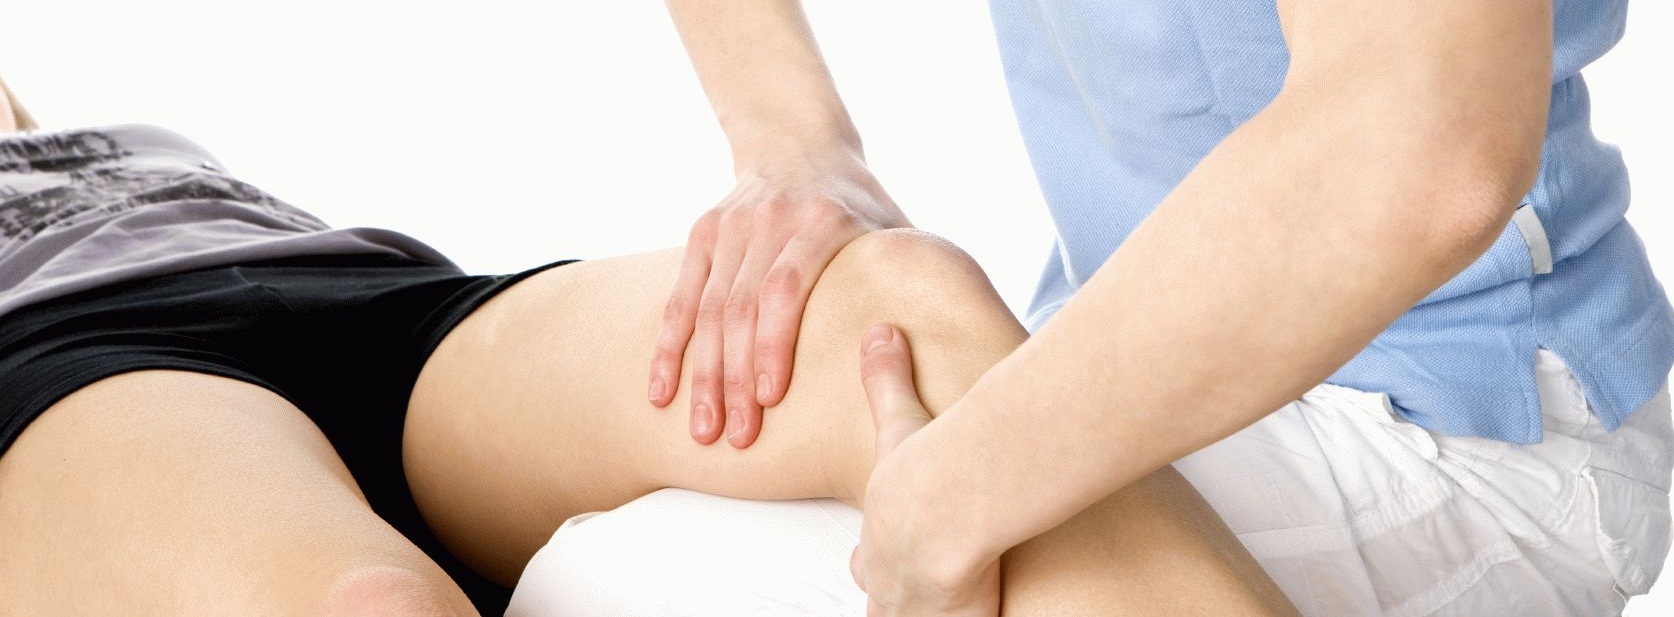 3 метода лечебного массаж колена при артрозе (мануальная терапия)